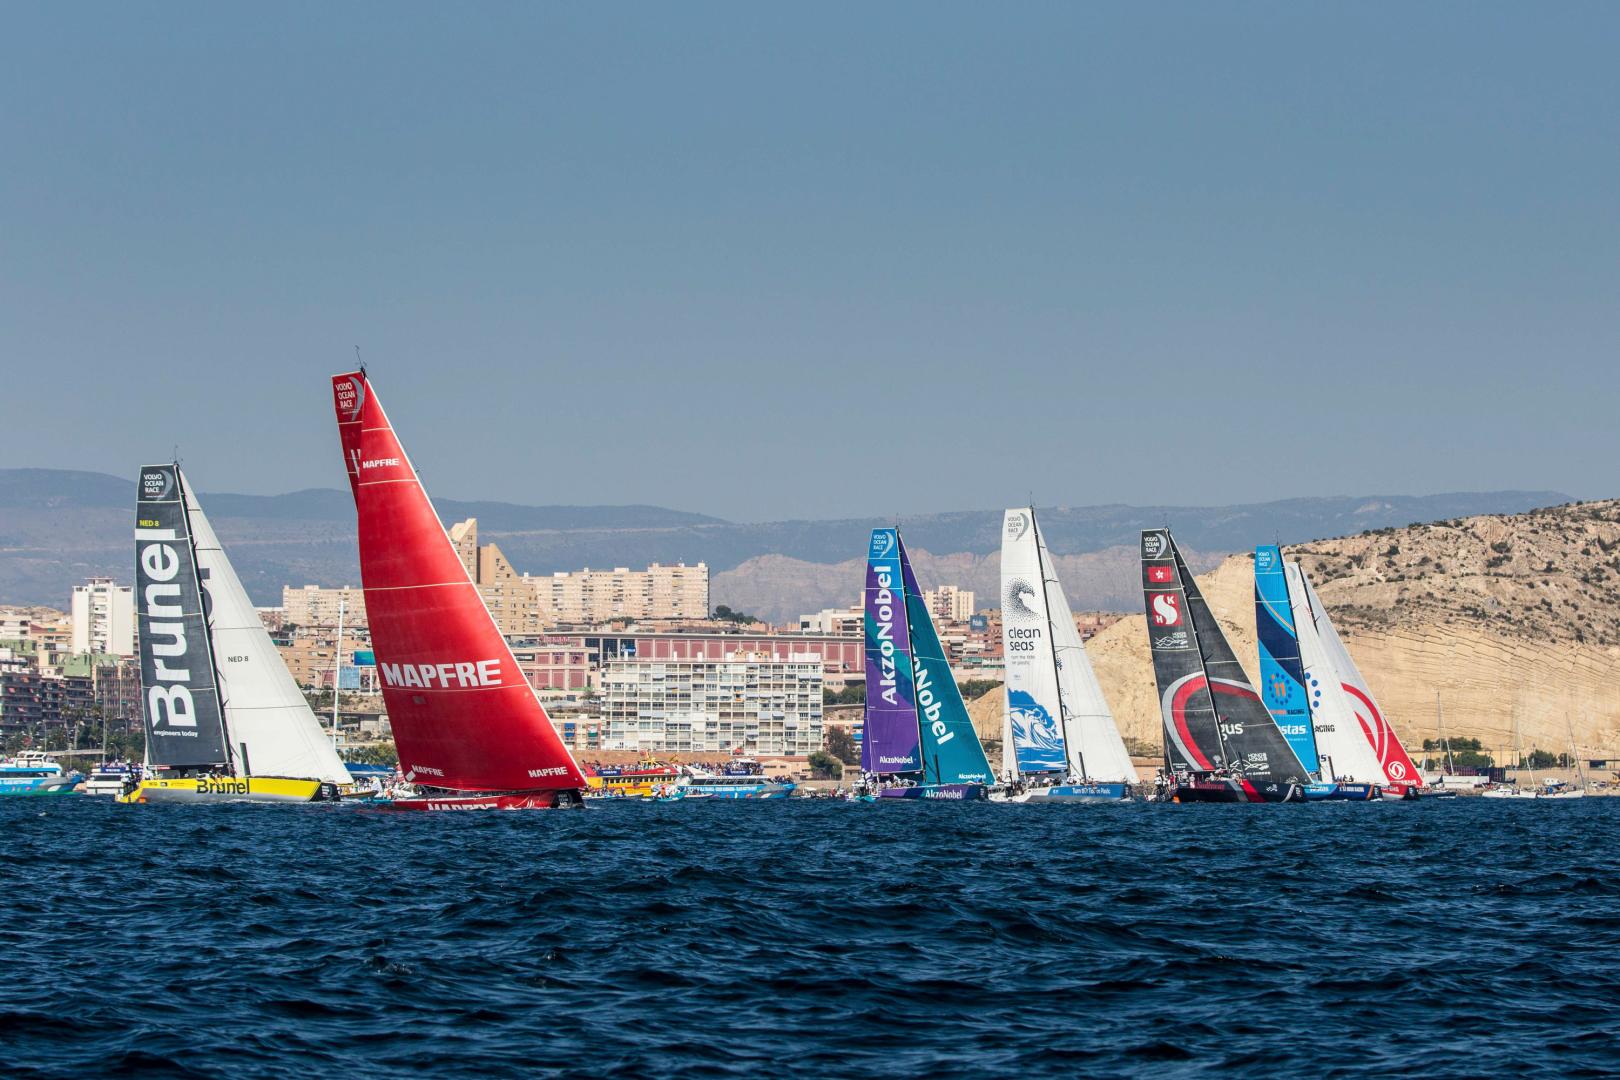 Alicante In-Port Race. Beau Outteridge/Turn the Tide on Plastic